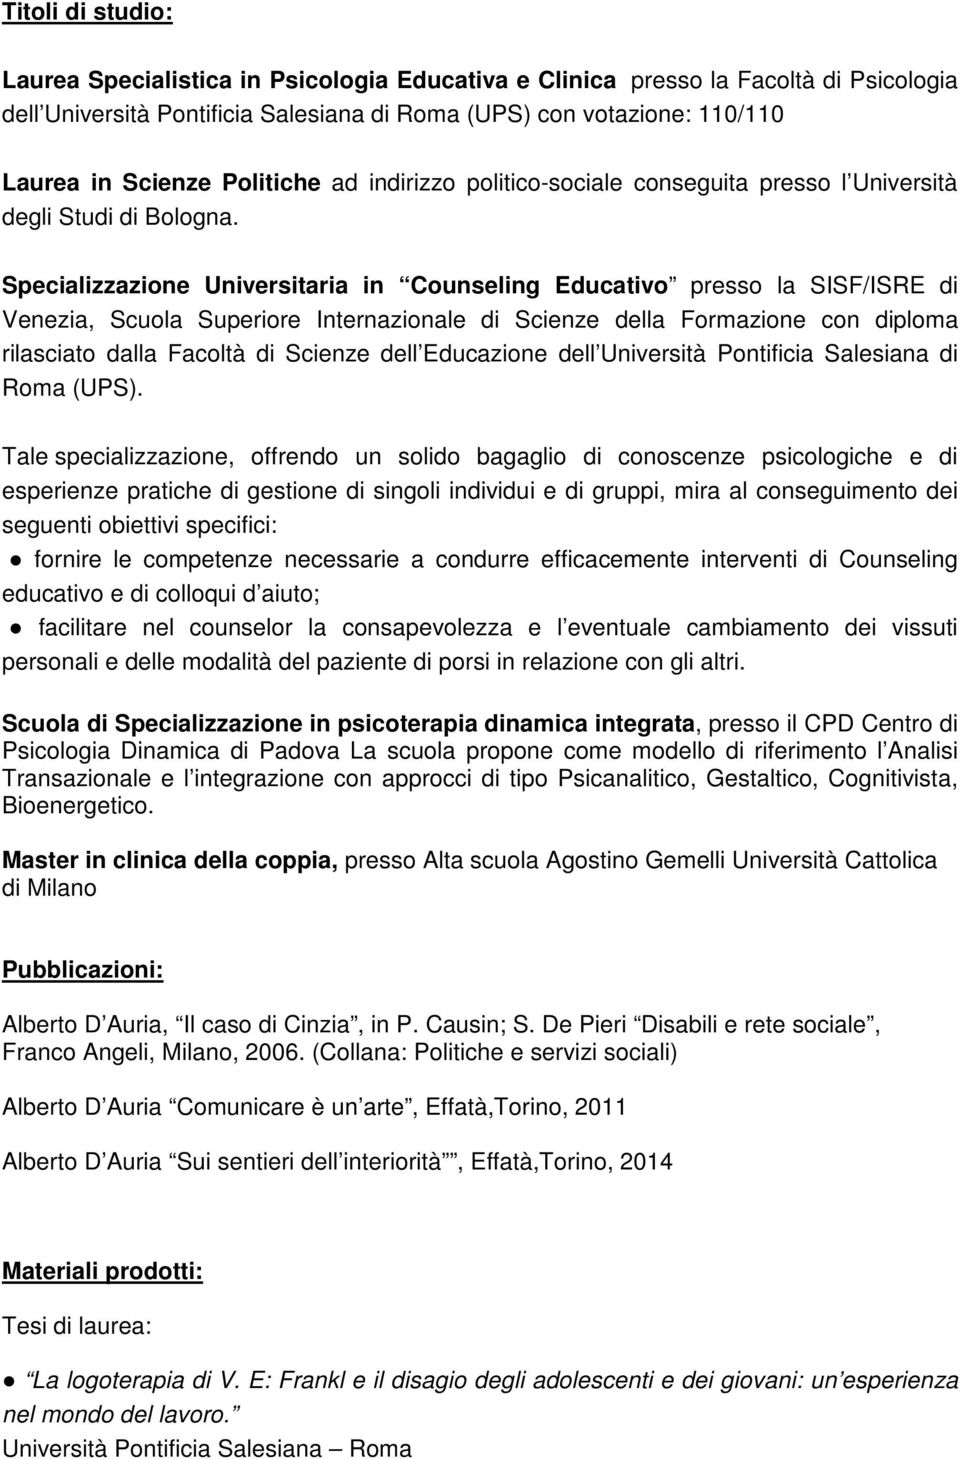 Specializzazione Universitaria in Counseling Educativo presso la SISF/ISRE di Venezia, Scuola Superiore Internazionale di Scienze della Formazione con diploma rilasciato dalla Facoltà di Scienze dell